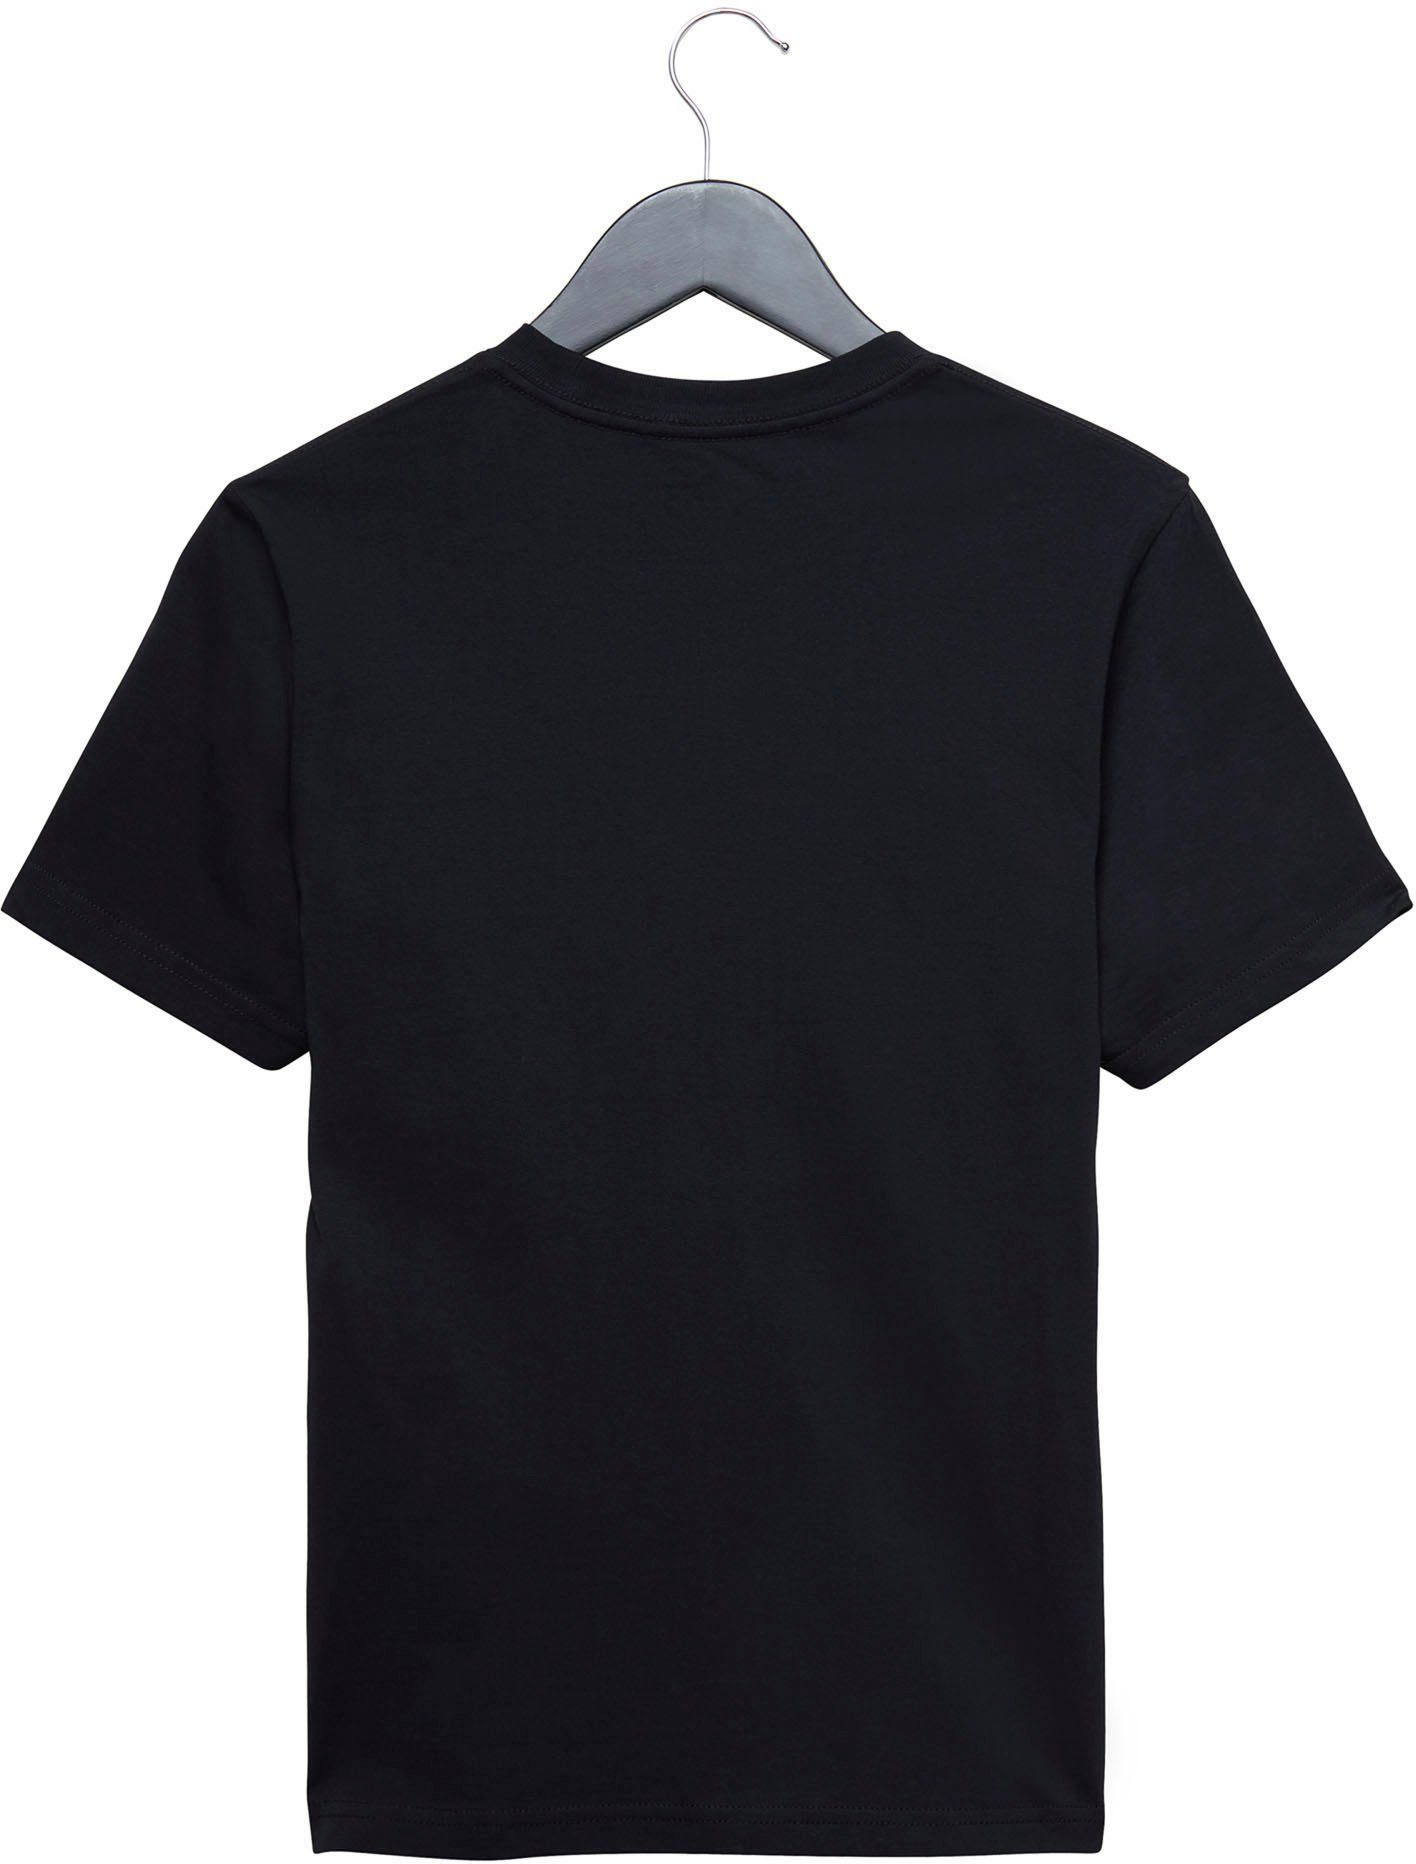 CLASSIC KIDS schwarz Vans VANS T-Shirt